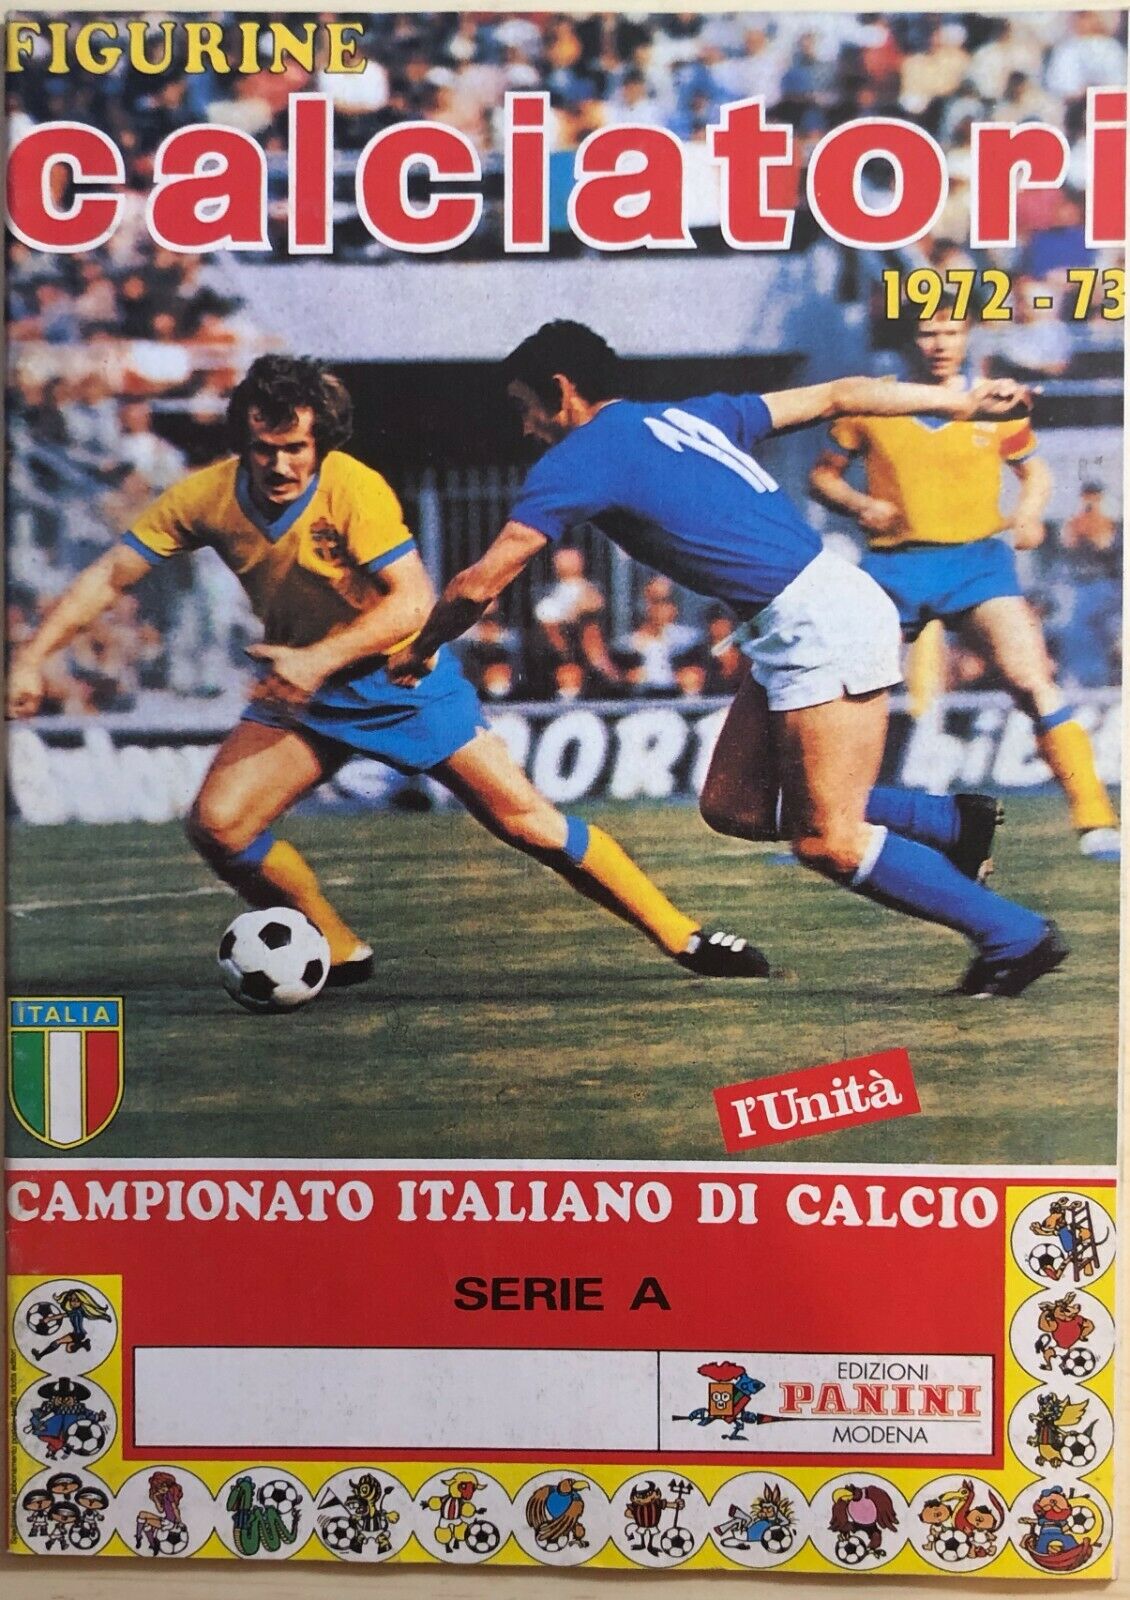 Ristampa album Calciatori Panini Serie A 1972-73